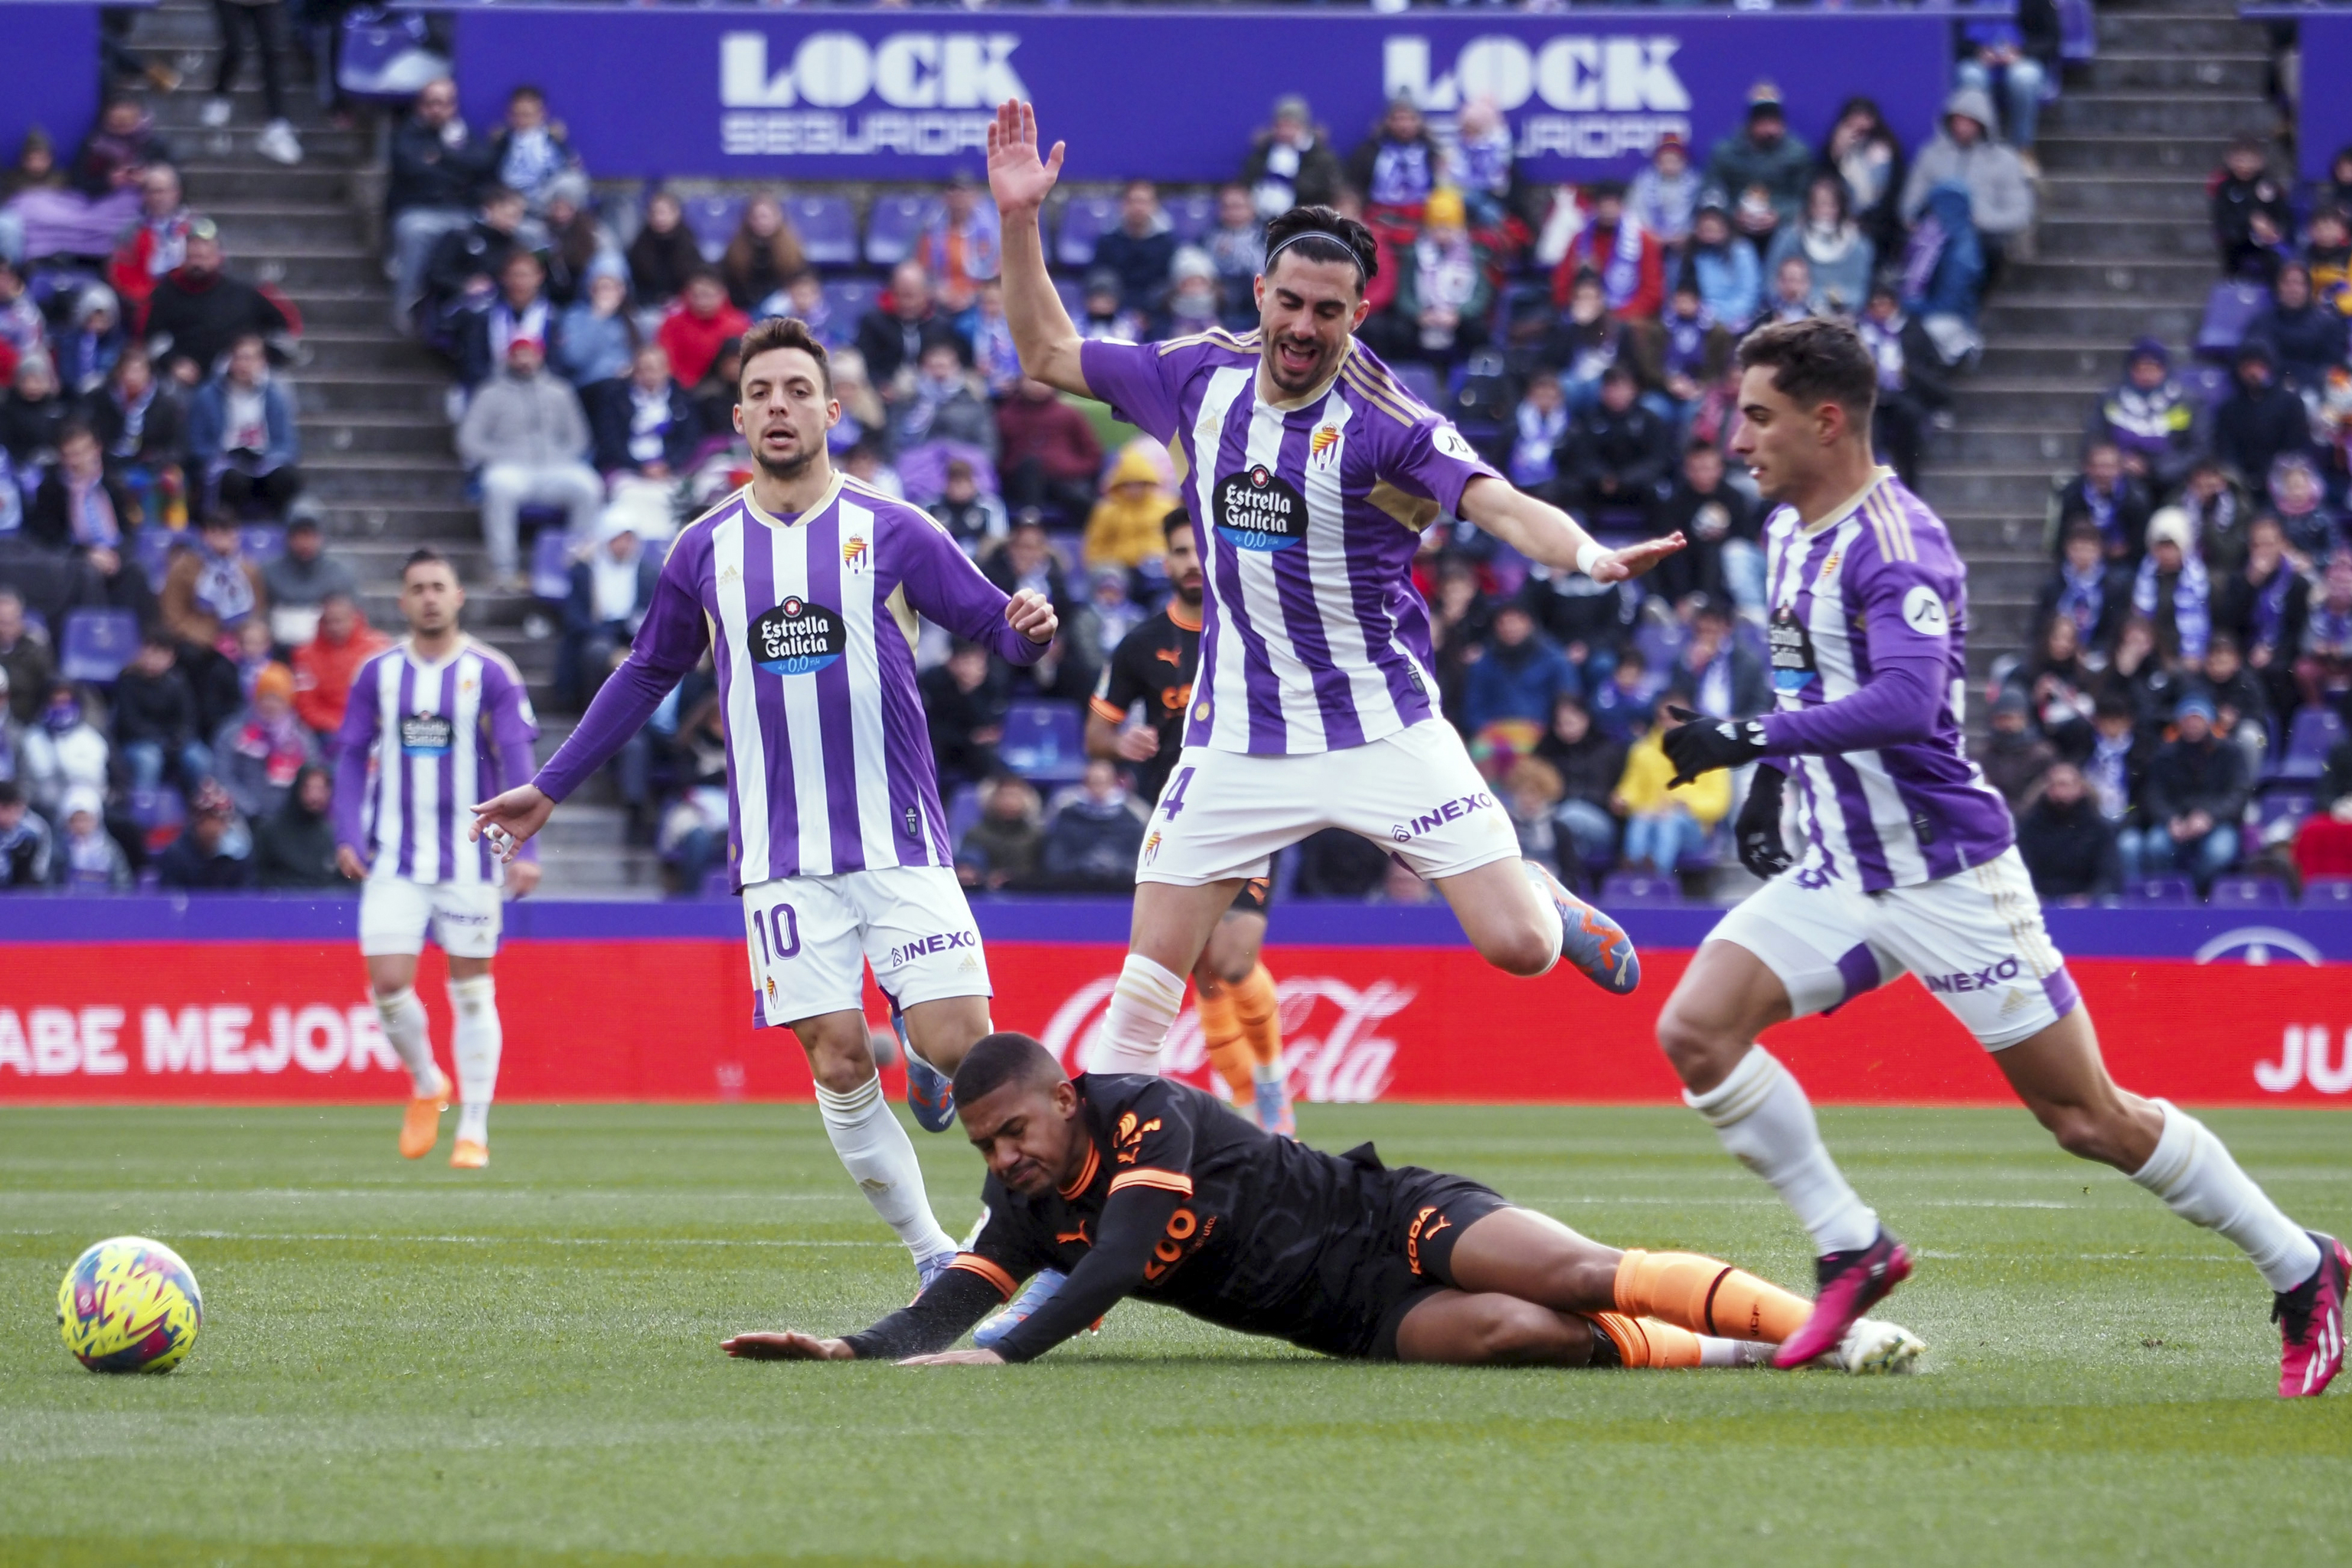 La defensa del Valladolid frena a Samuel Lino.